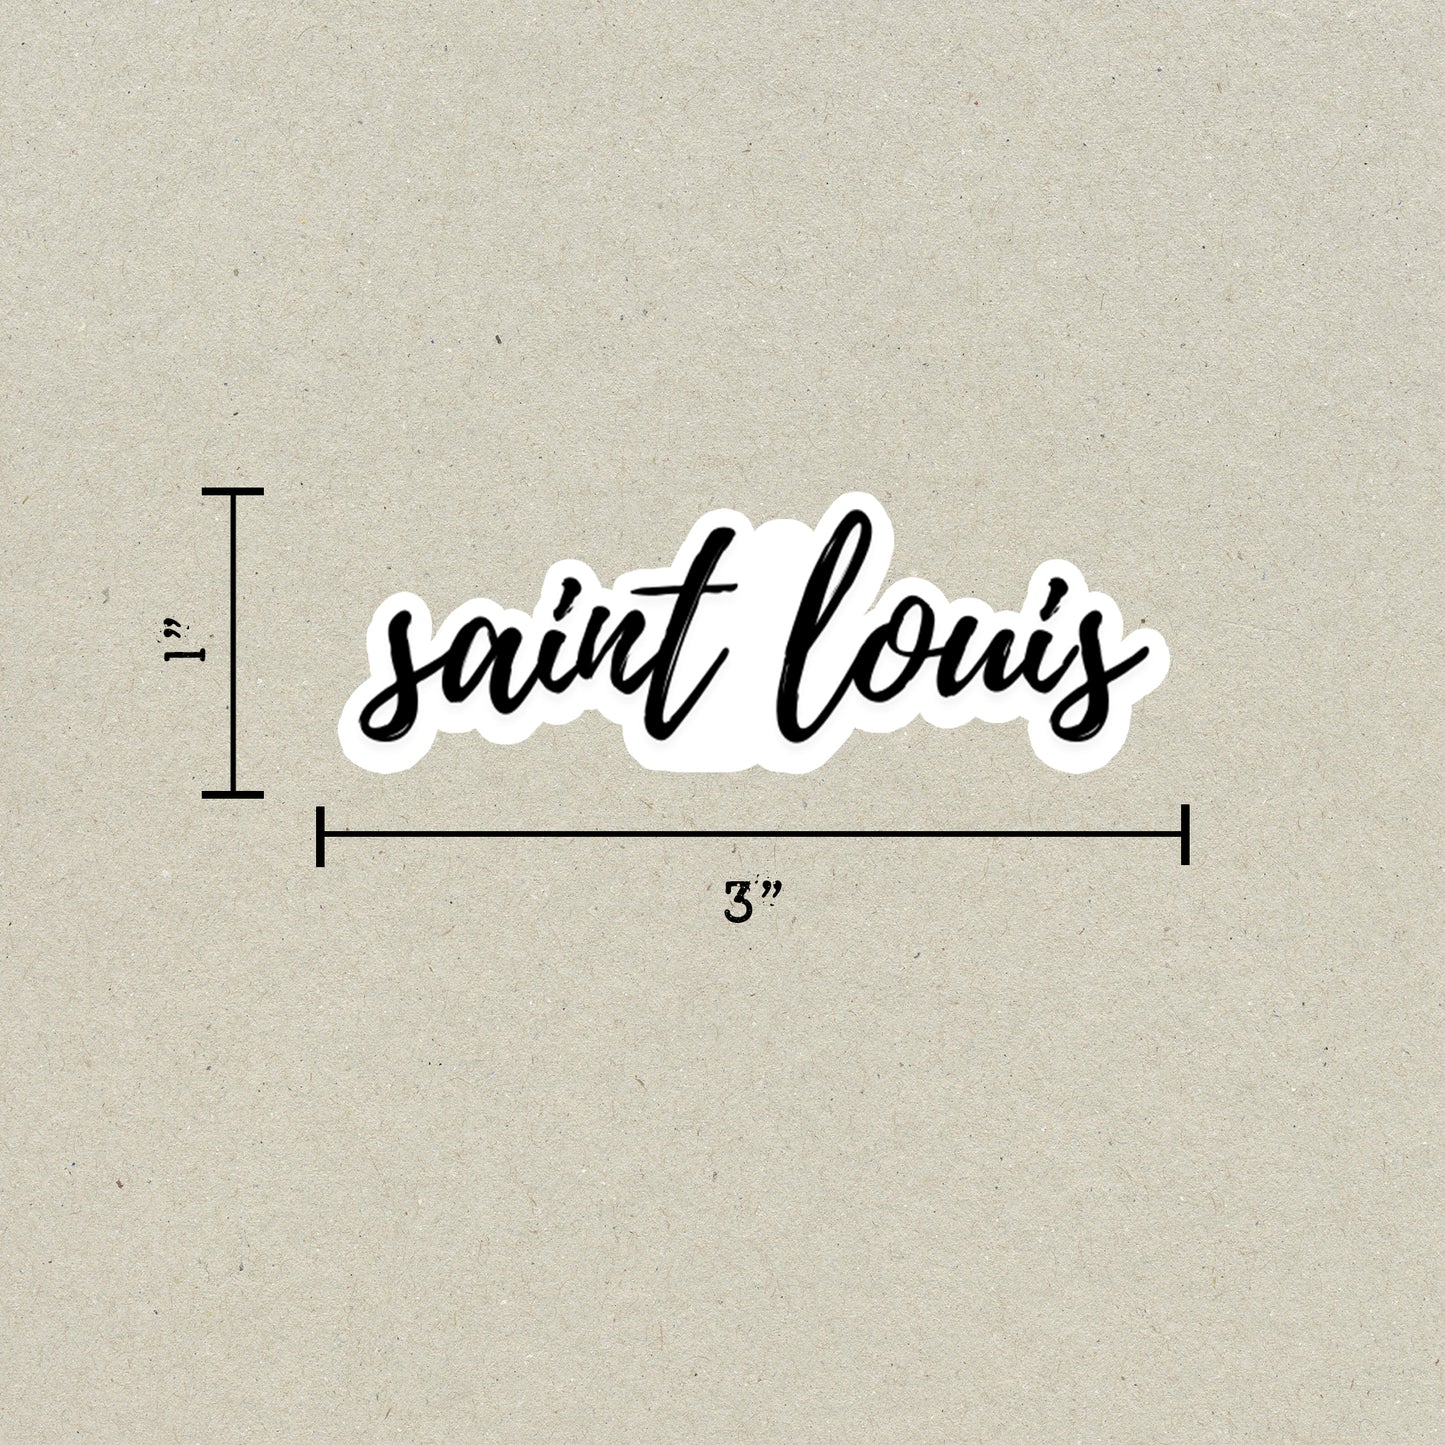 Saint Louis Cursive Sticker